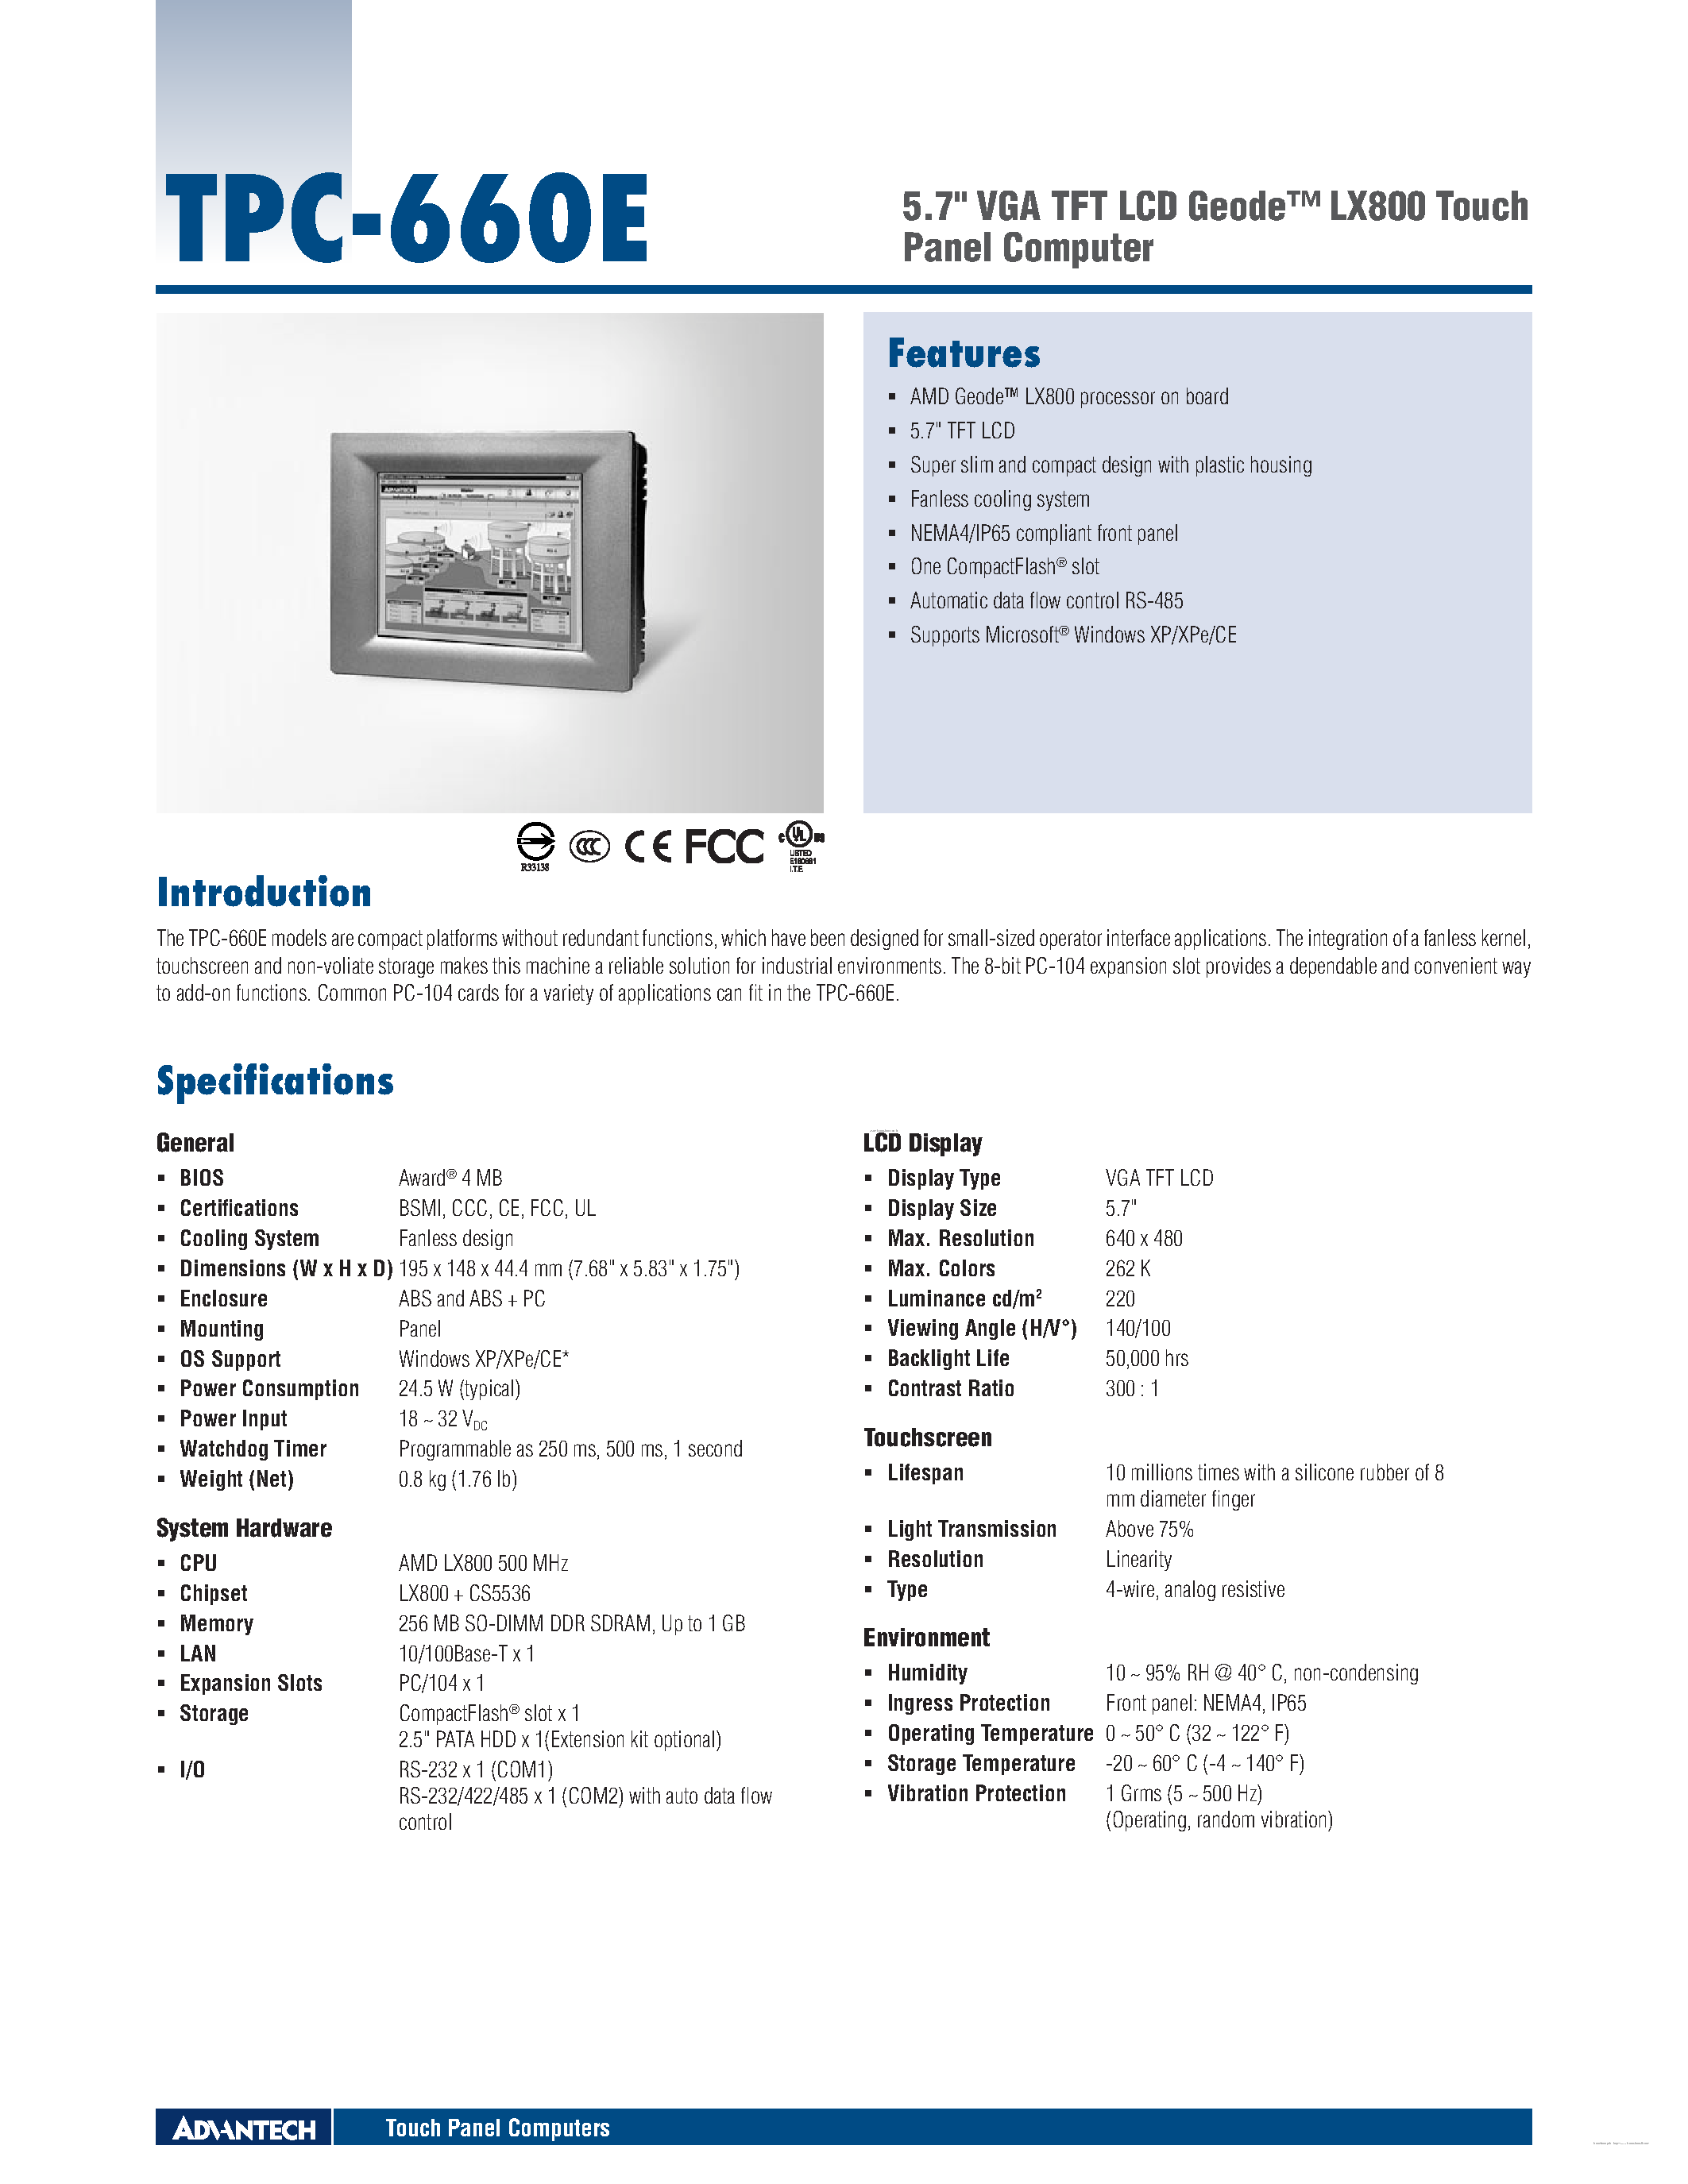 Даташит TPC-660E - 5.7 VGA TFT LCD Geode страница 1